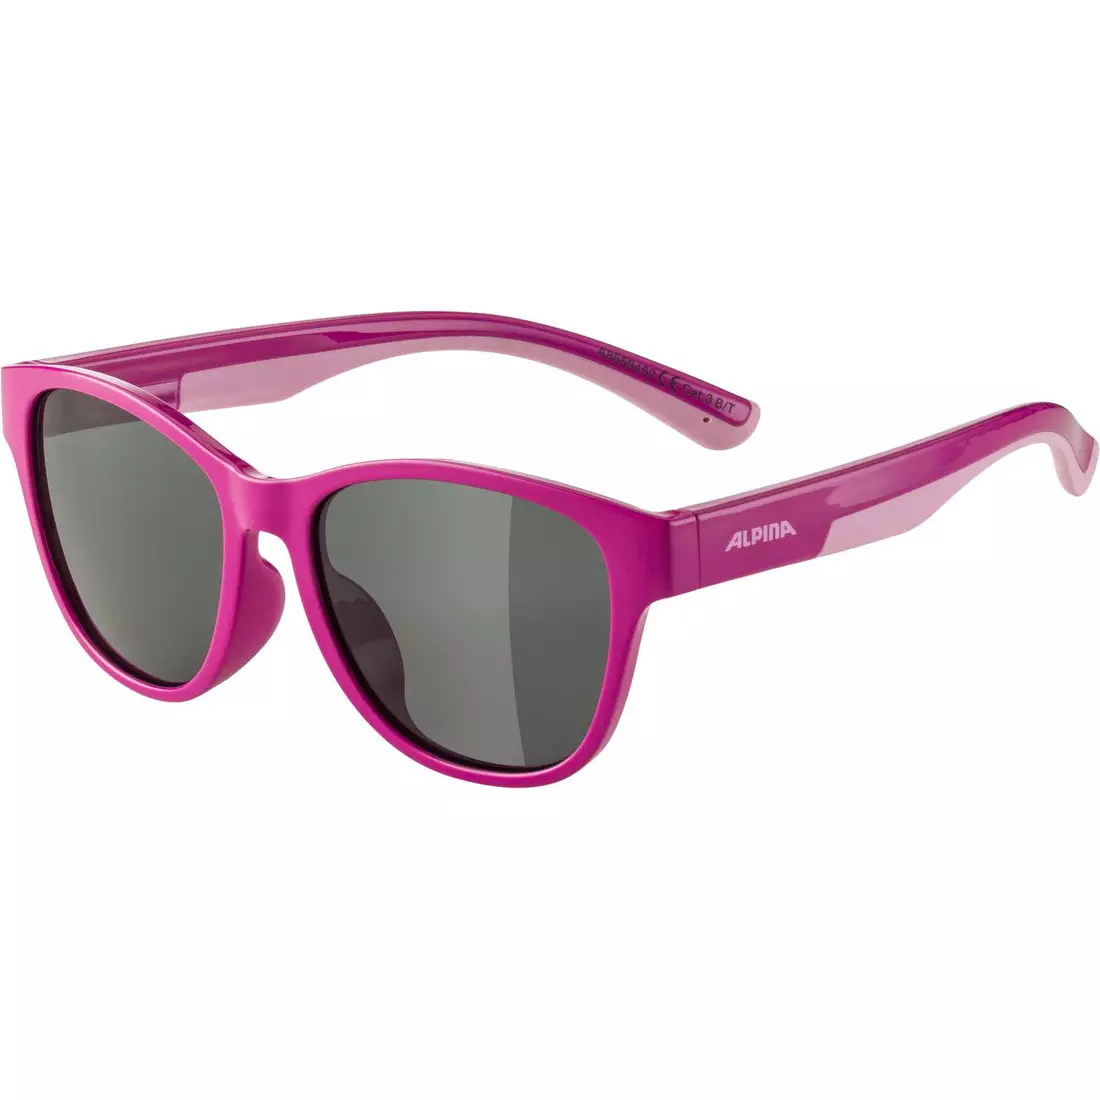 ALPINA FLEXXY COOL KIDS II okulary rowerowe/sportowe dziecięce, pink-rose gloss